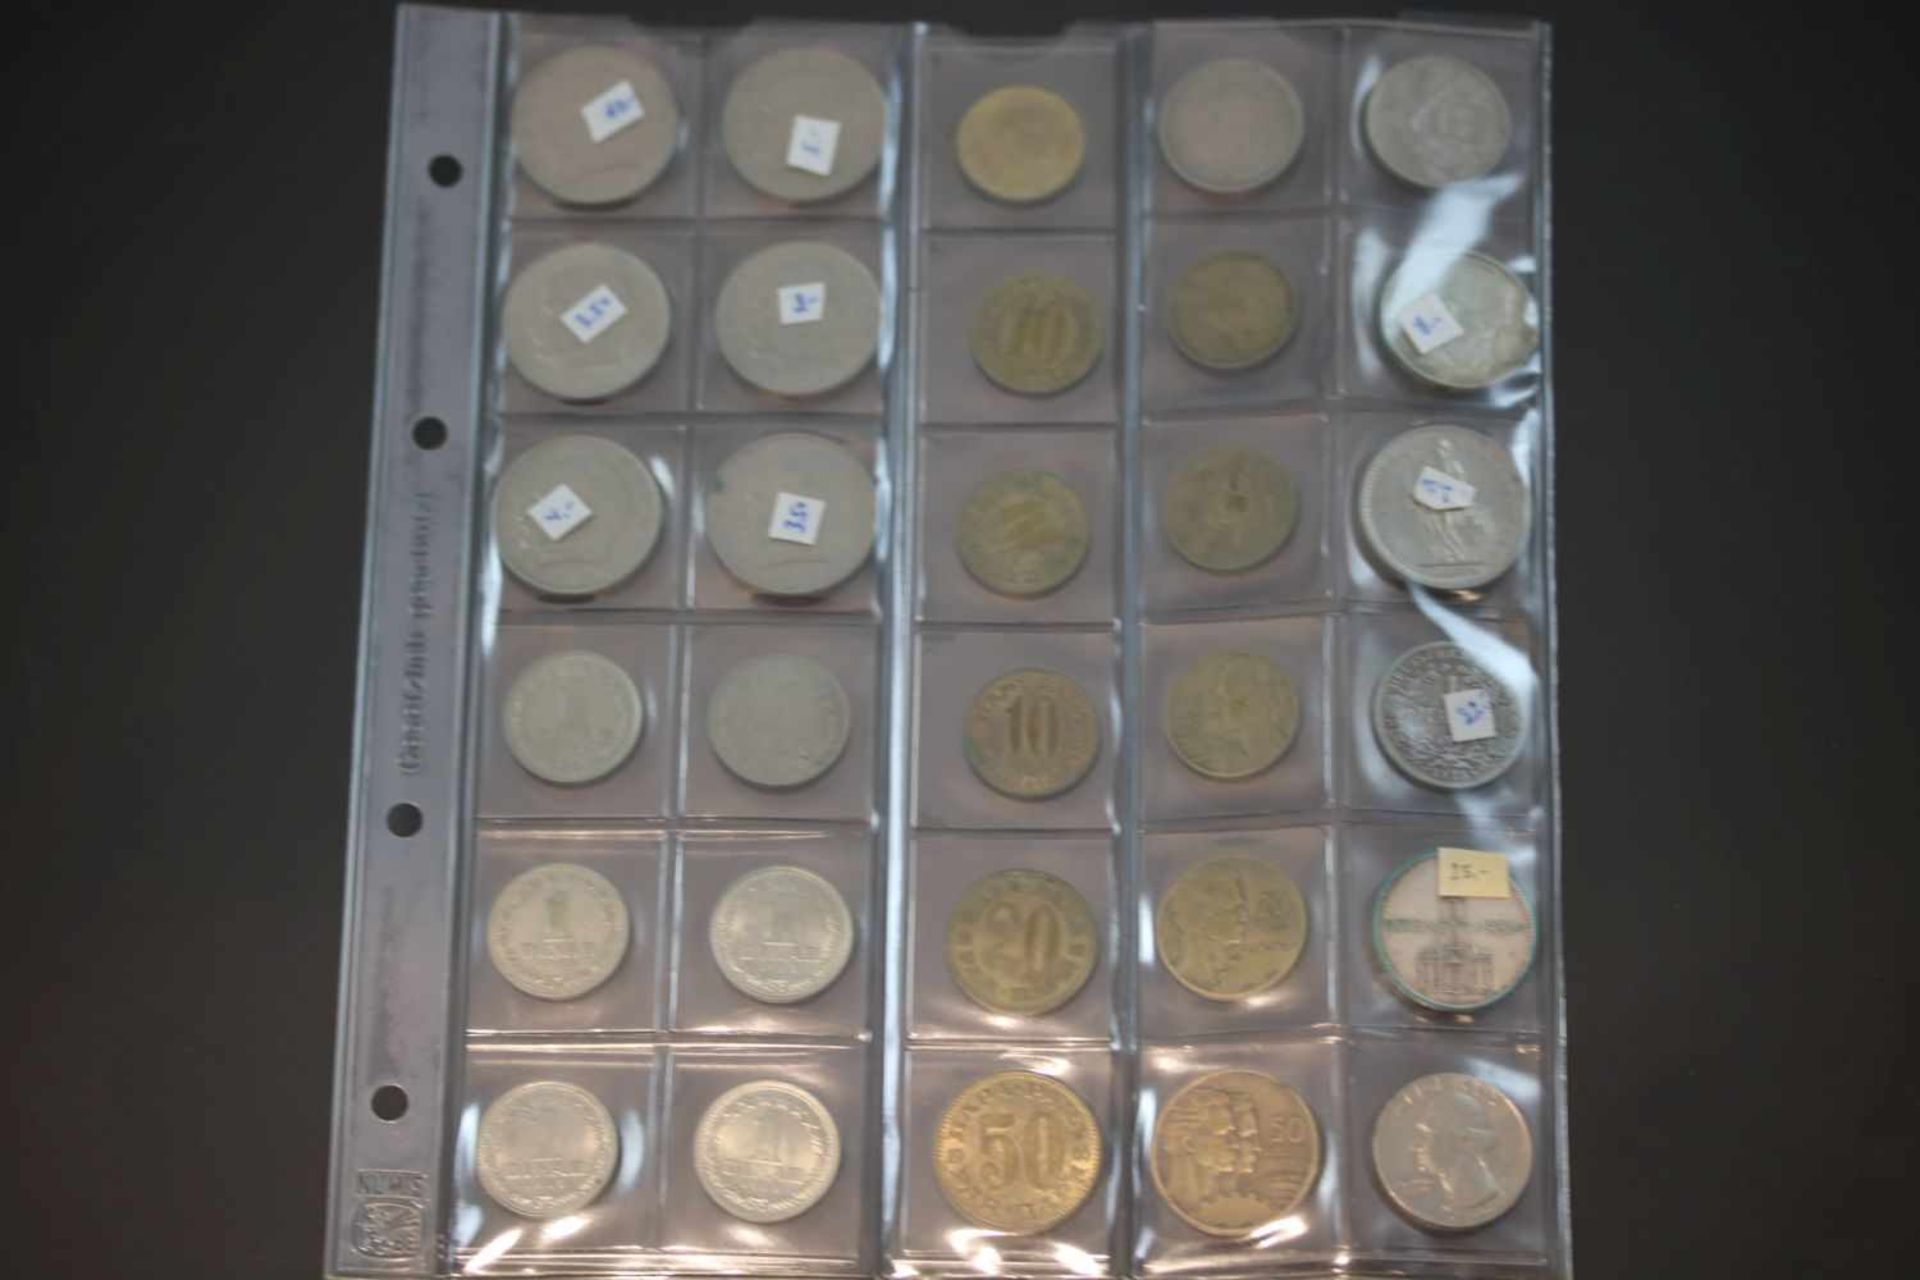 Münz-Konvolut30 Münzen diverser Währungen und Jahrgänge.- - -25.00 % buyer's premium on the hammer